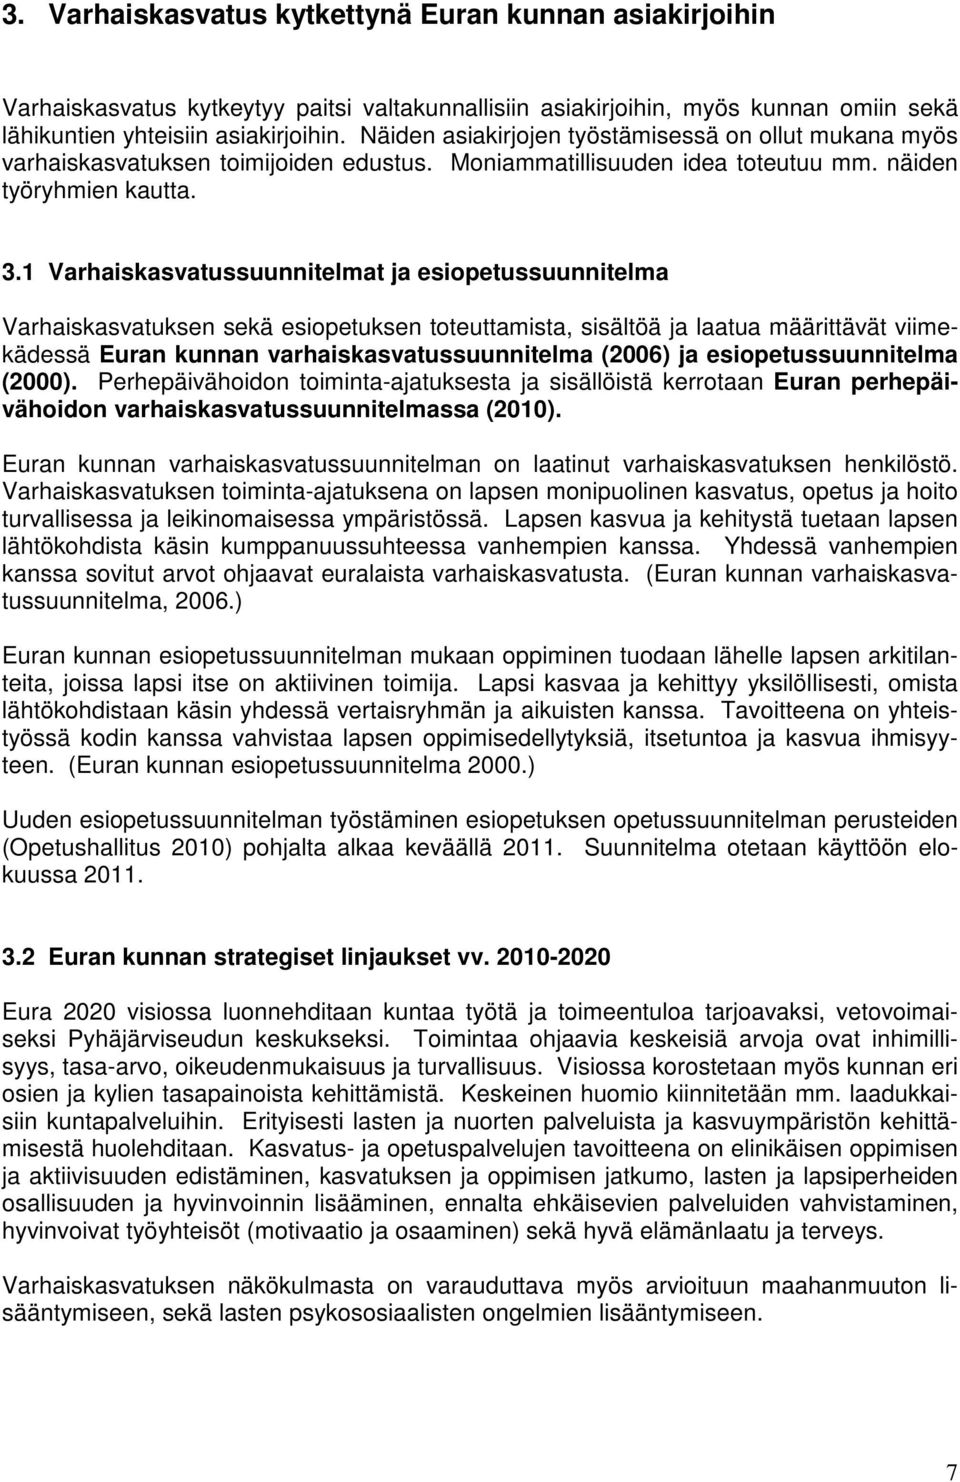 1 Varhaiskasvatussuunnitelmat ja esiopetussuunnitelma Varhaiskasvatuksen sekä esiopetuksen toteuttamista, sisältöä ja laatua määrittävät viimekädessä Euran kunnan varhaiskasvatussuunnitelma (2006) ja